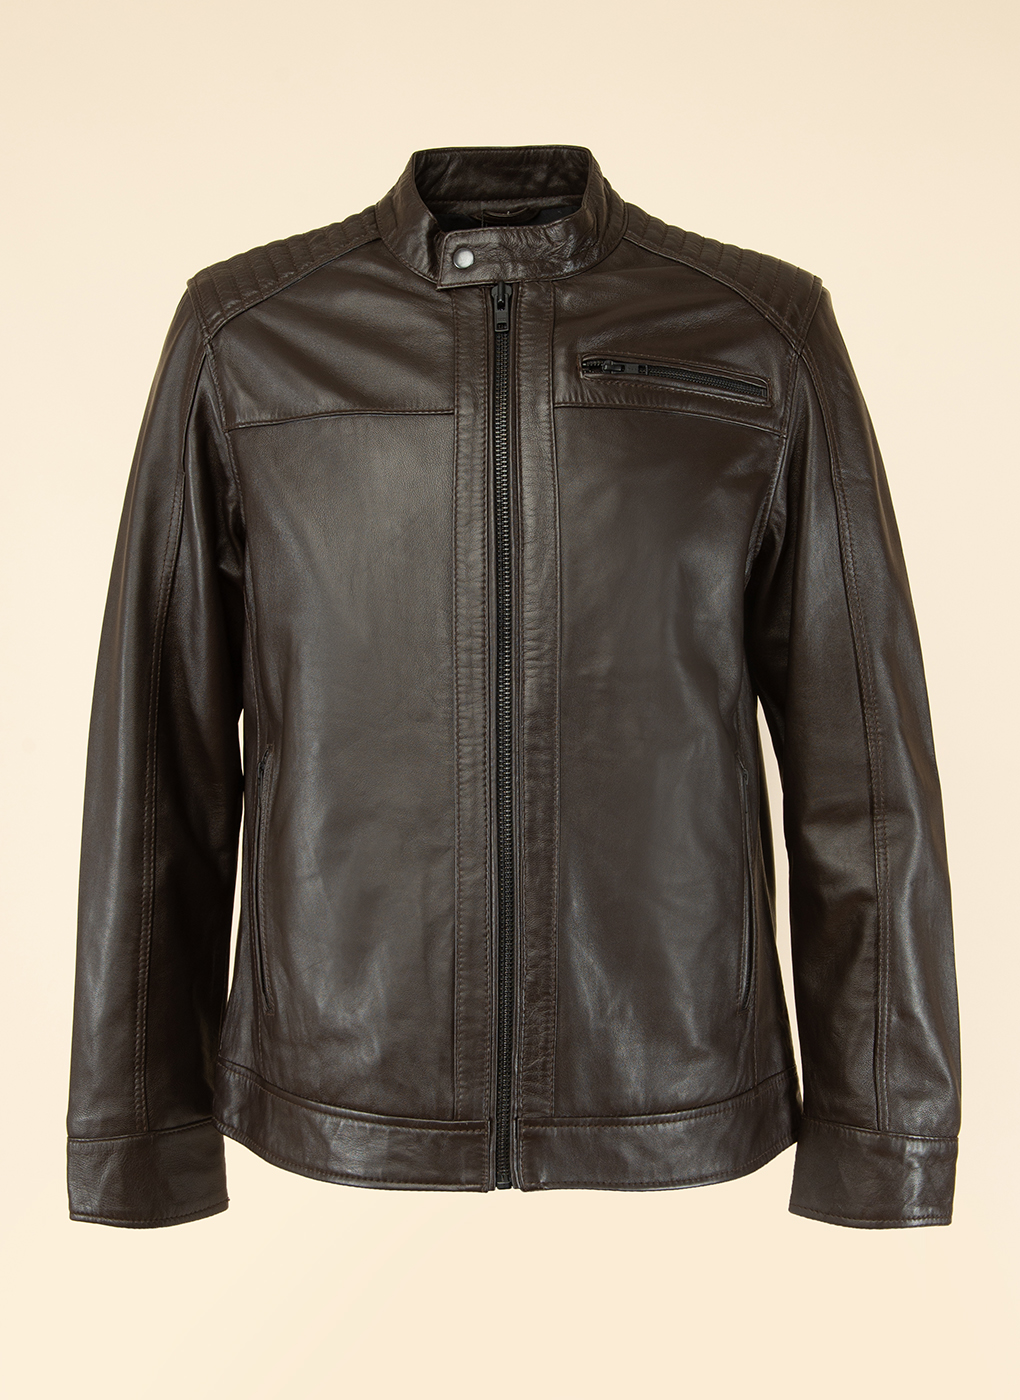 Кожаная куртка мужская Каляев 1597129 коричневая 58 RU